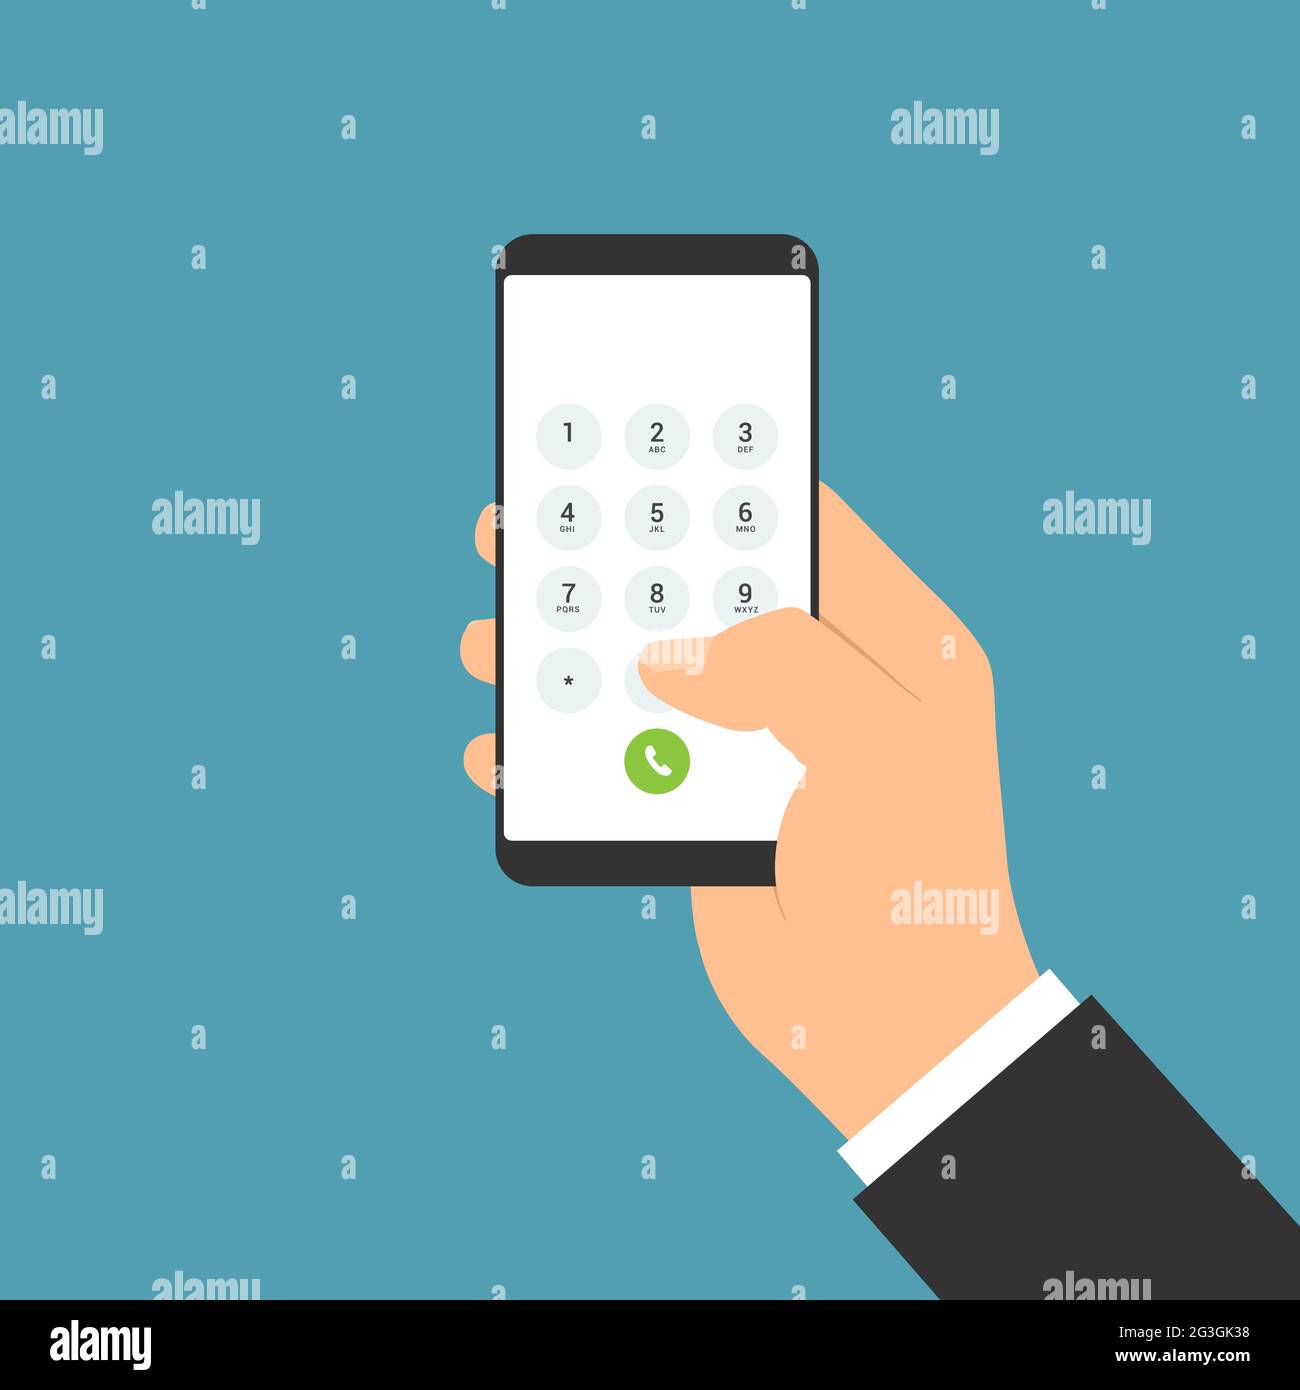 Immagine dal design piatto dello smartphone con mani e touch screen del manager. Comporre una tastiera luminosa con numeri e lettere - vettoriali Illustrazione Vettoriale